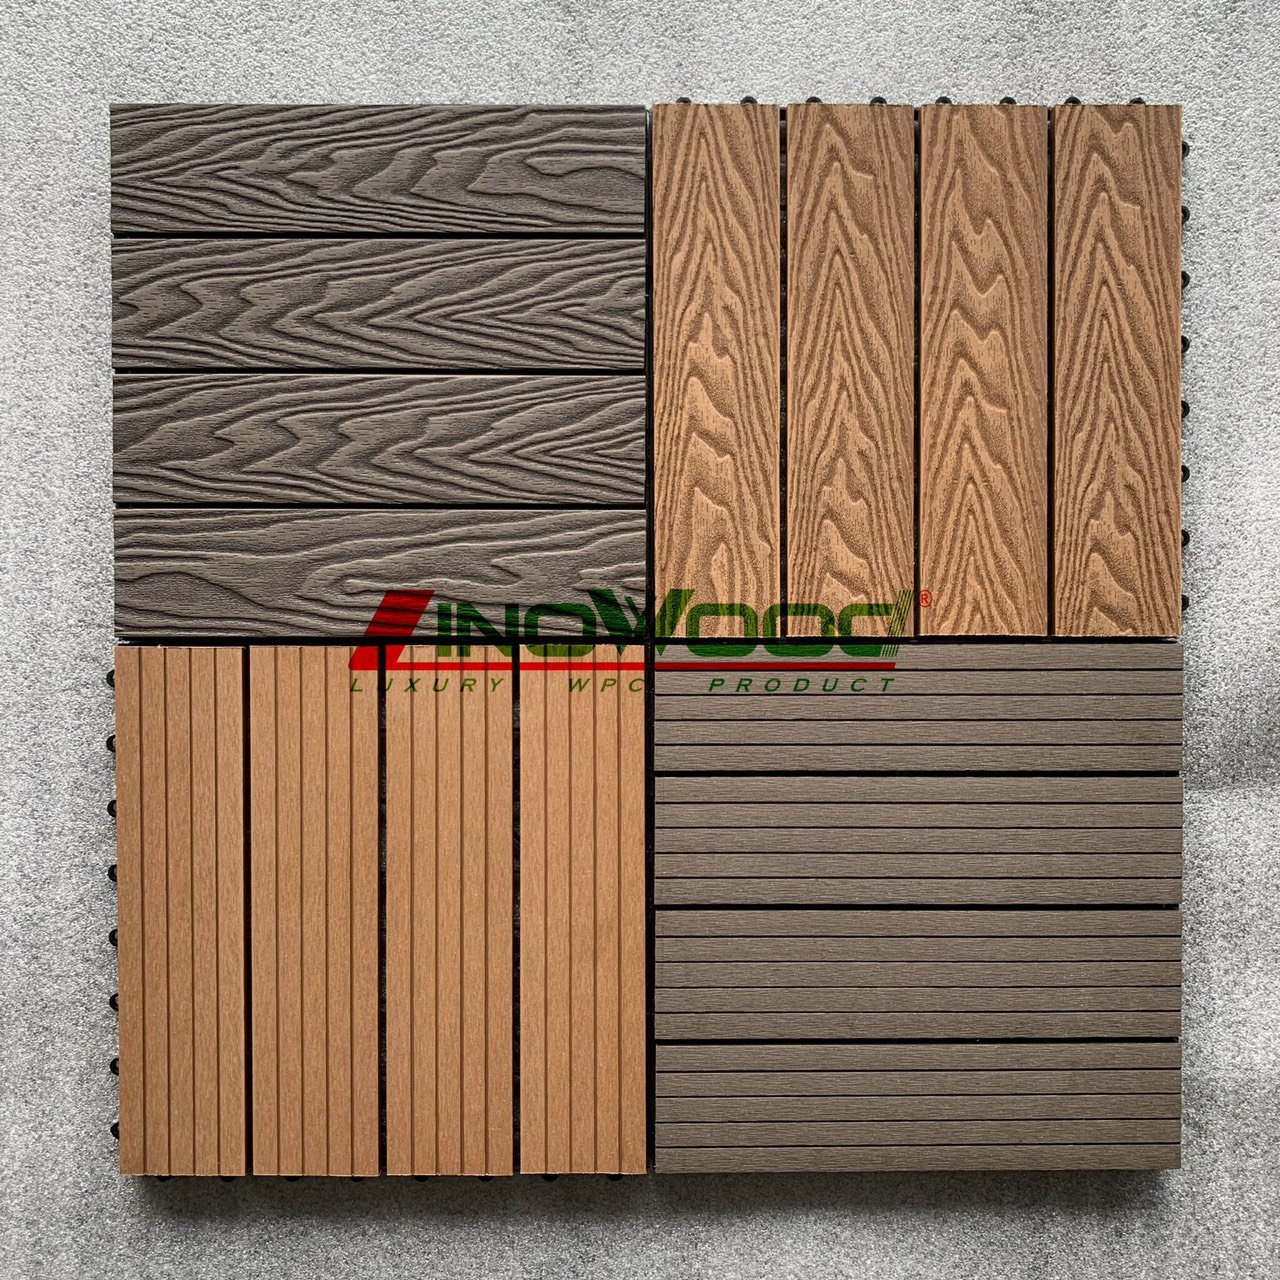 Kho gỗ nhựa Linowood Bình Dương